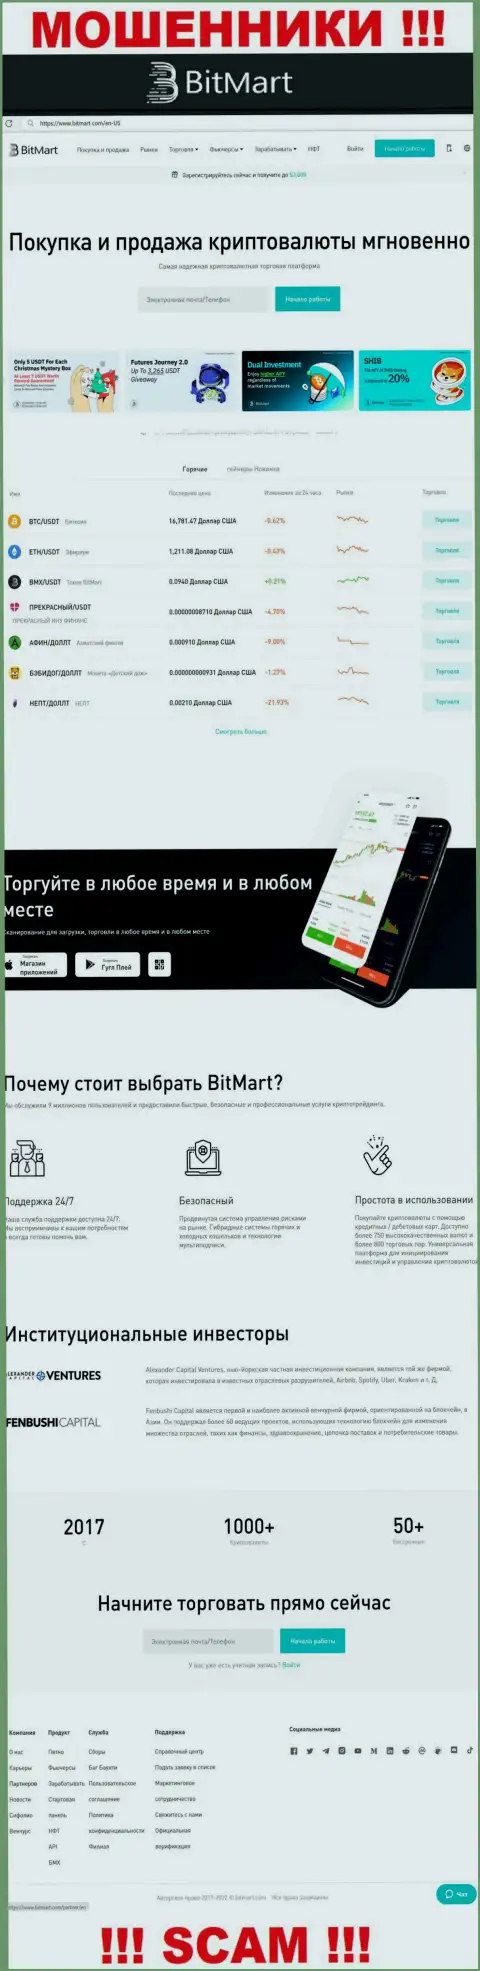 Внешний вид официального информационного портала мошеннической организации BitMart